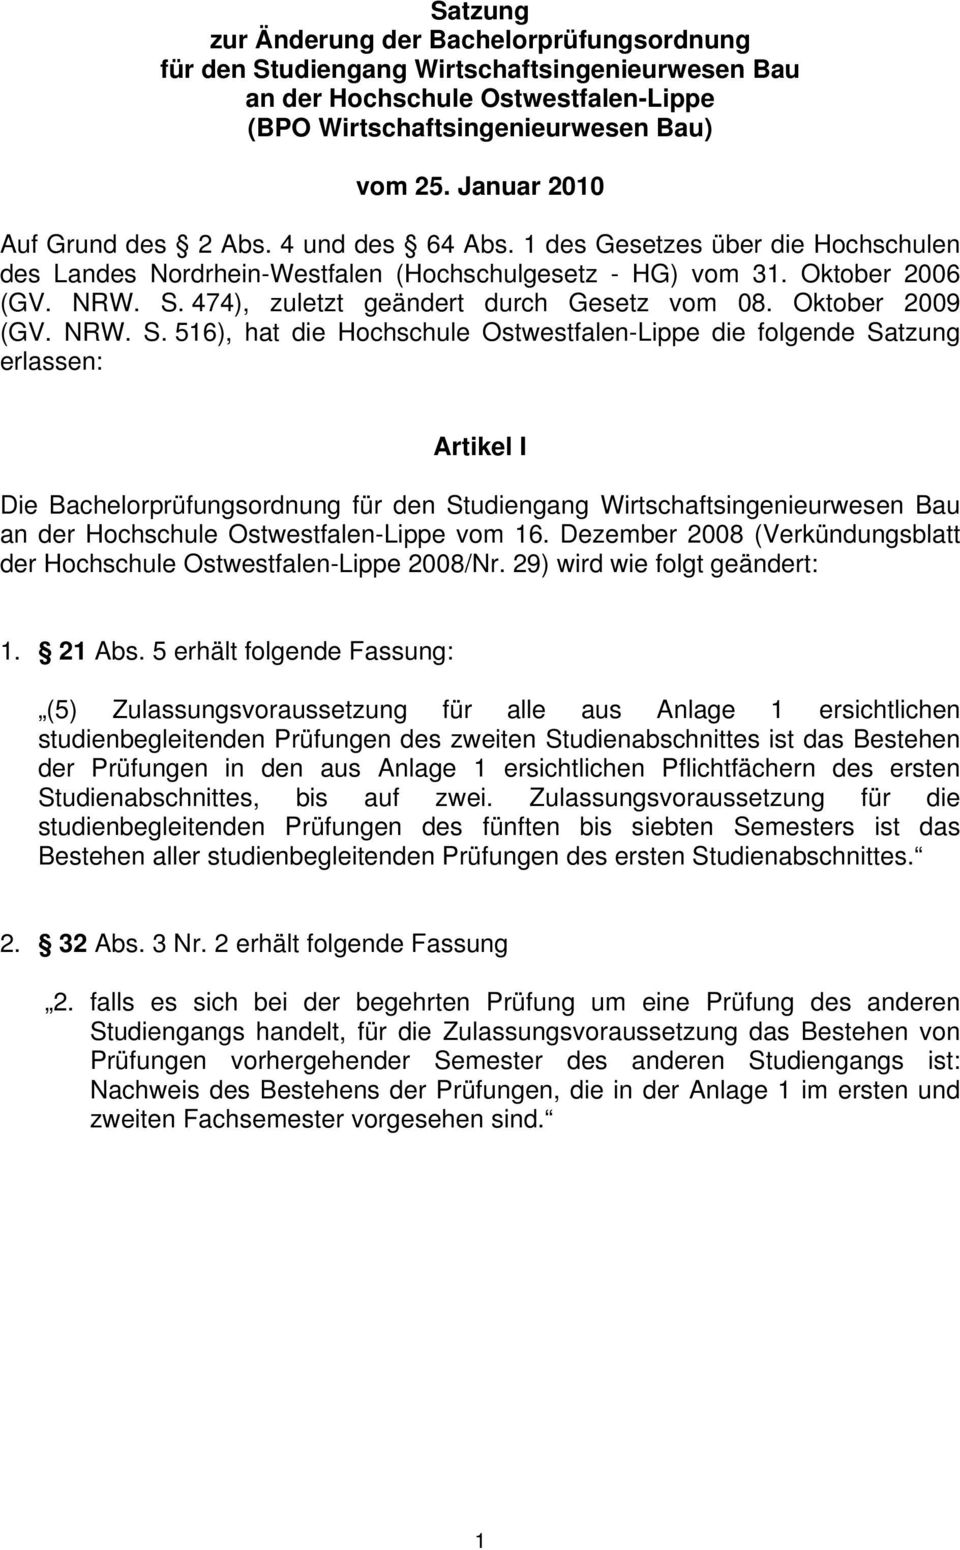 474), zuletzt geändert durch Gesetz vom 08. Oktober 2009 (GV. NRW. S.